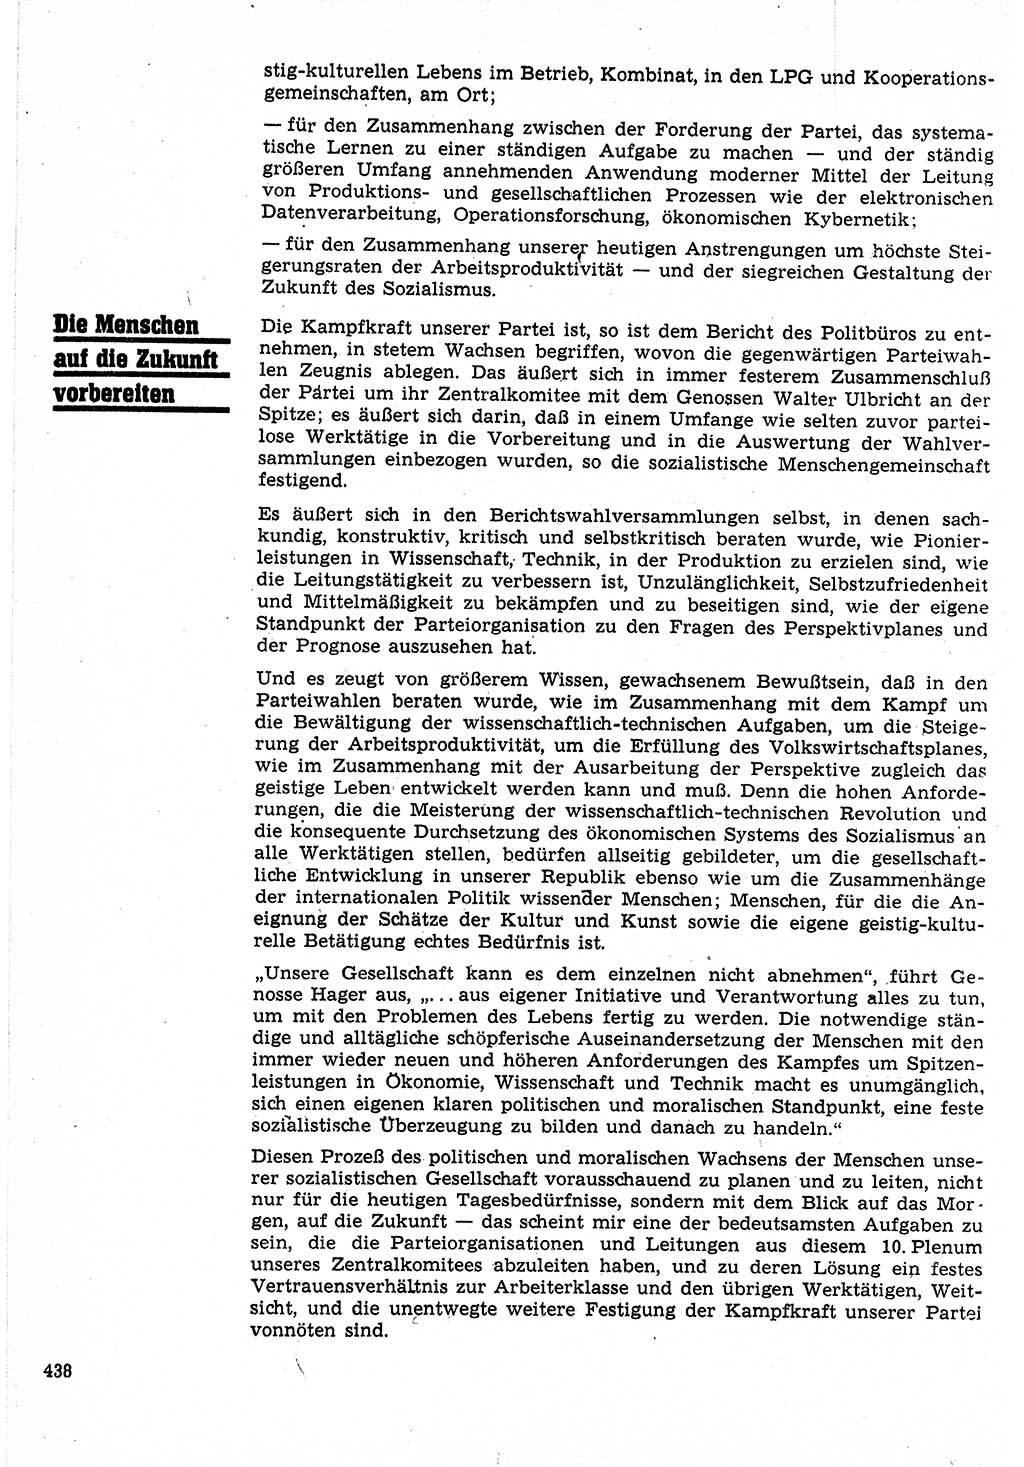 Neuer Weg (NW), Organ des Zentralkomitees (ZK) der SED (Sozialistische Einheitspartei Deutschlands) für Fragen des Parteilebens, 24. Jahrgang [Deutsche Demokratische Republik (DDR)] 1969, Seite 438 (NW ZK SED DDR 1969, S. 438)